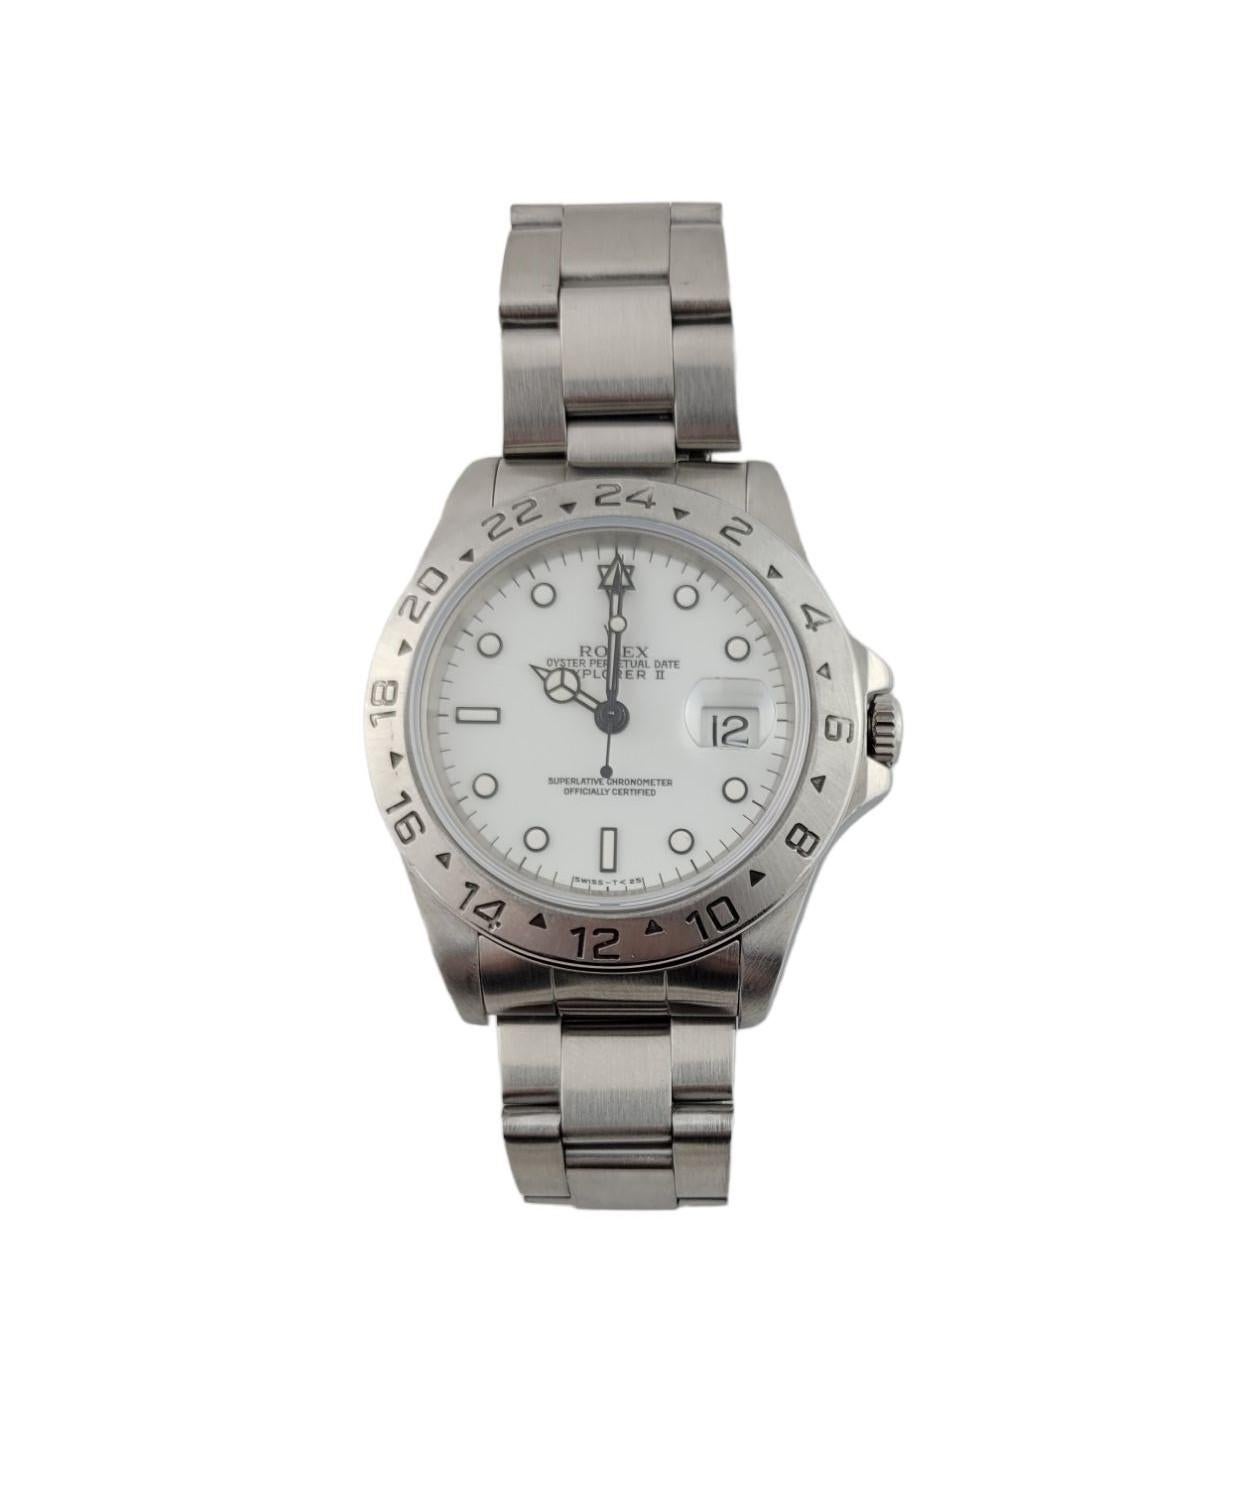 1996 Rolex Explorer II Herrenuhr

Modell: 16570
Seriennummer: T506944

Automatisches Uhrwerk

Weißes Zifferblatt

40mm Gehäuse

Oyster-Armband aus Edelstahl. Passt für Handgelenke bis zu 7